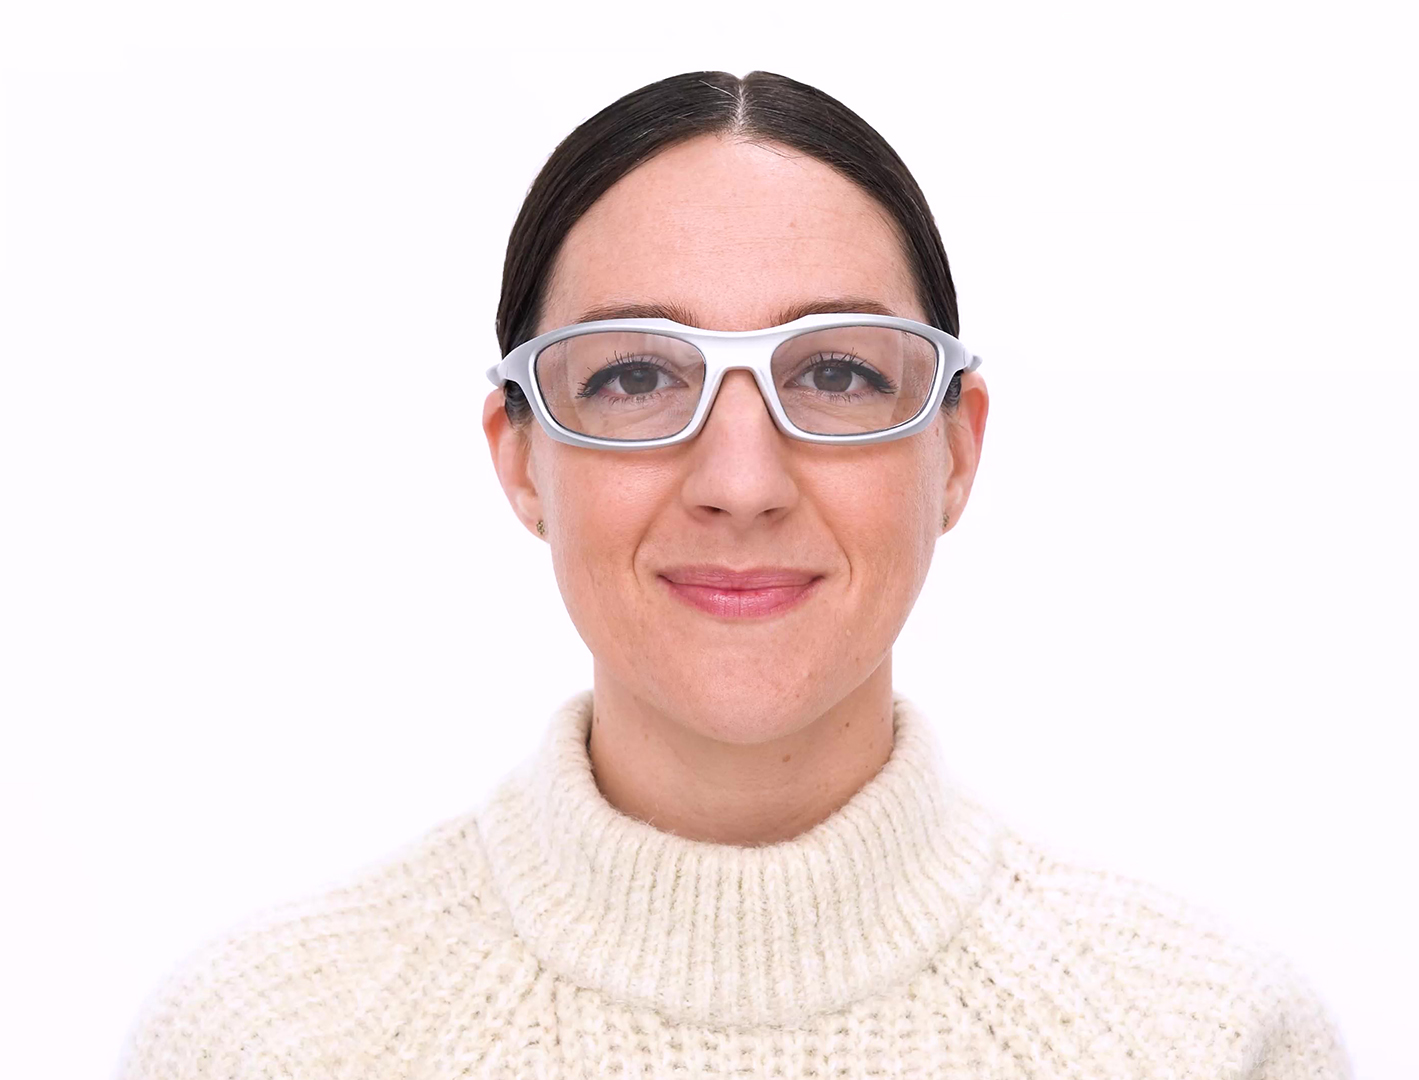 Matrix Sparks Prescription Safety Glasses - ANSI Z87.1 Certified - Rx Protective Eyewear